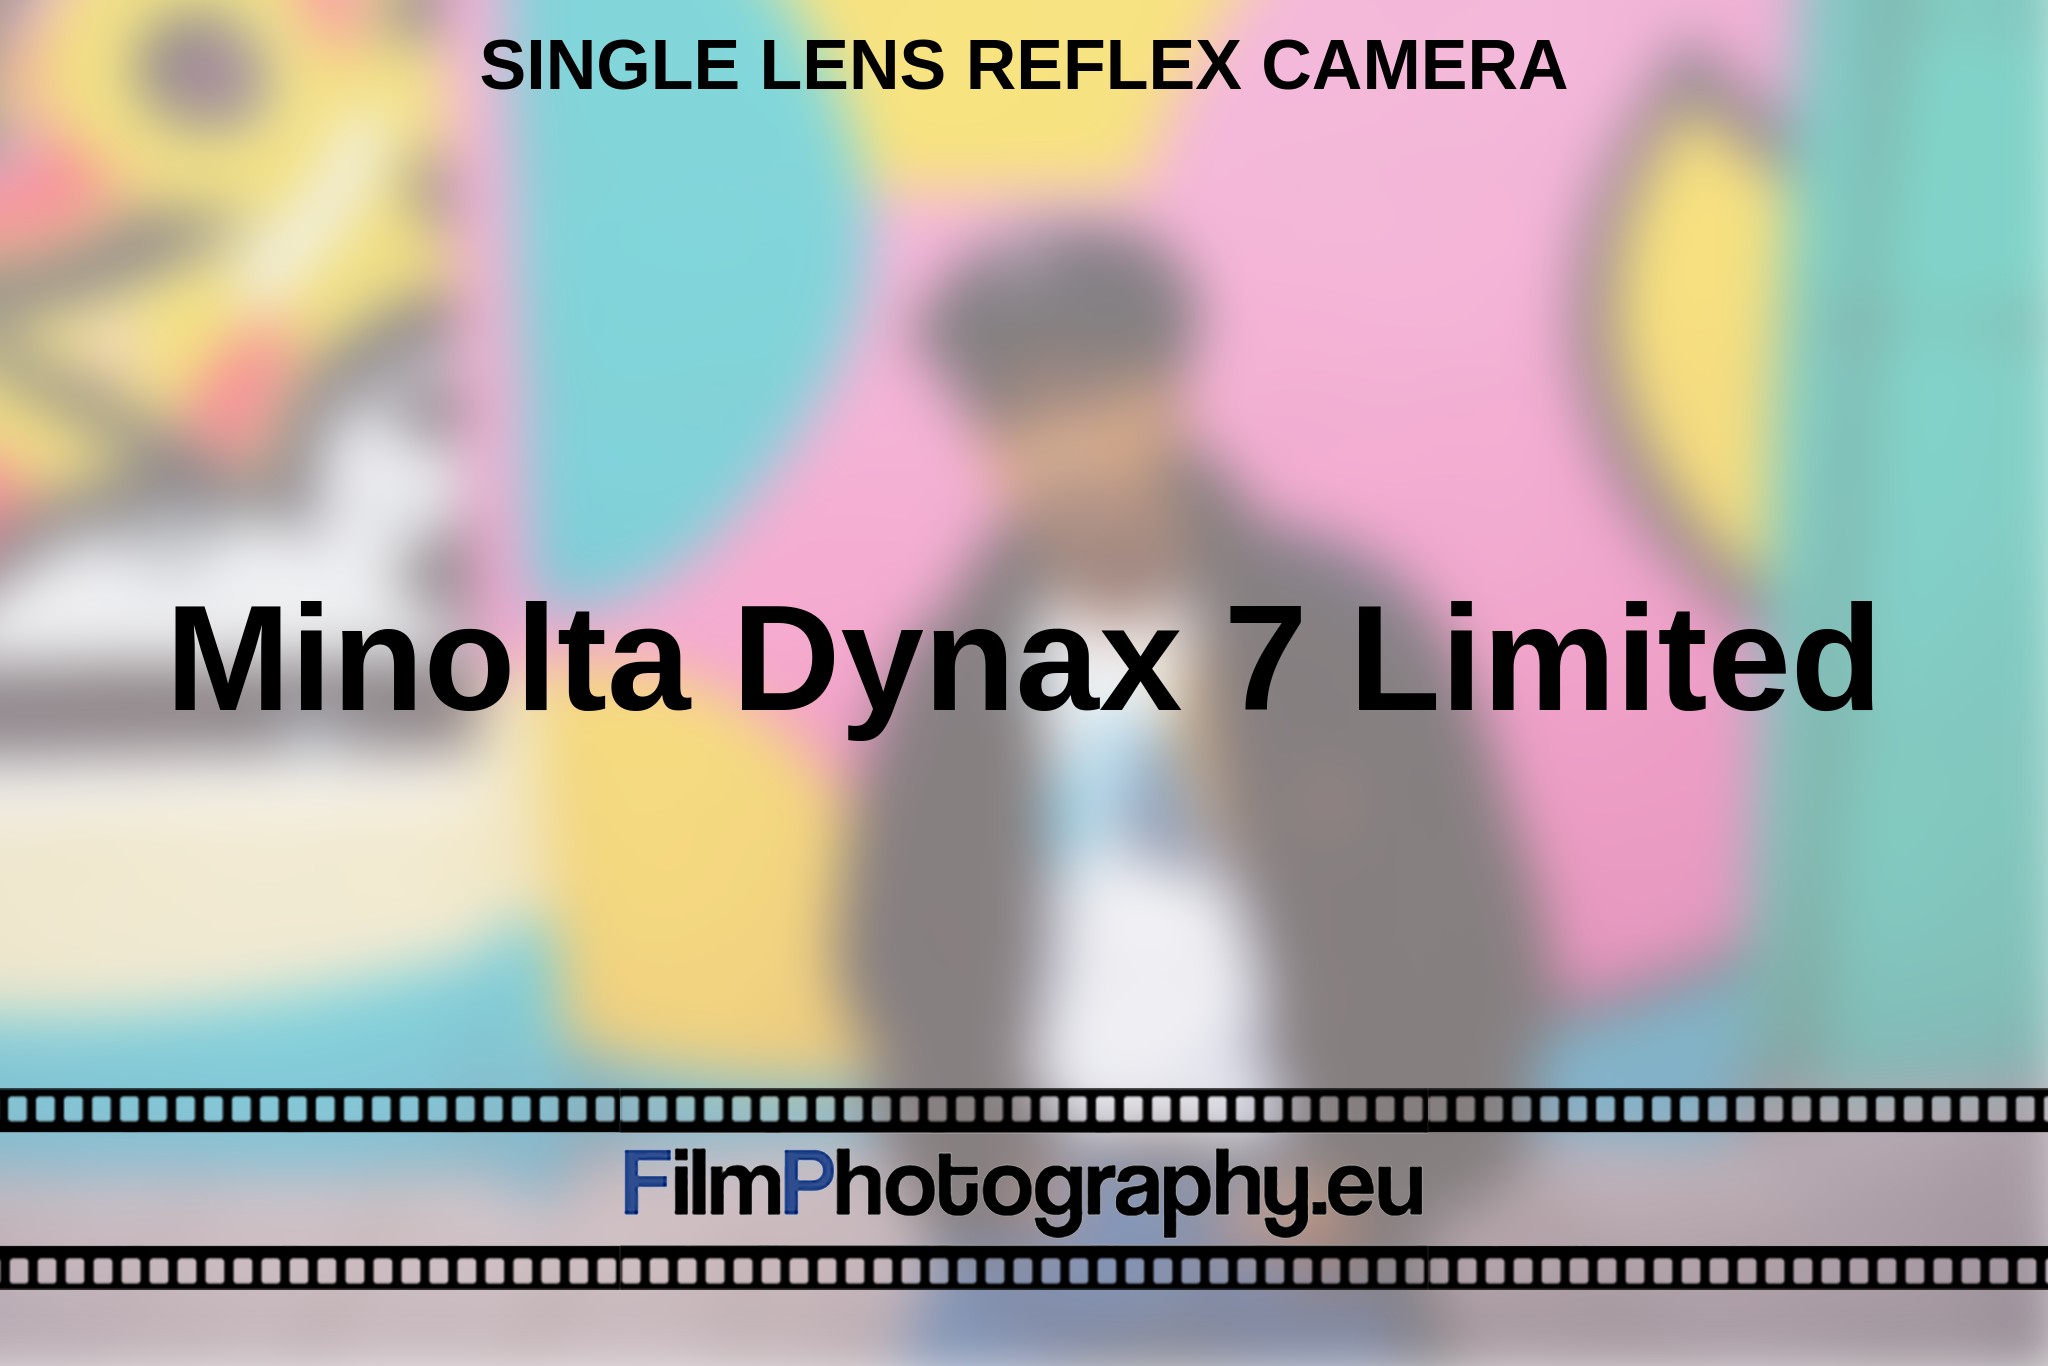 minolta-dynax-7-limited-single-lens-reflex-camera-en-bnv.jpg